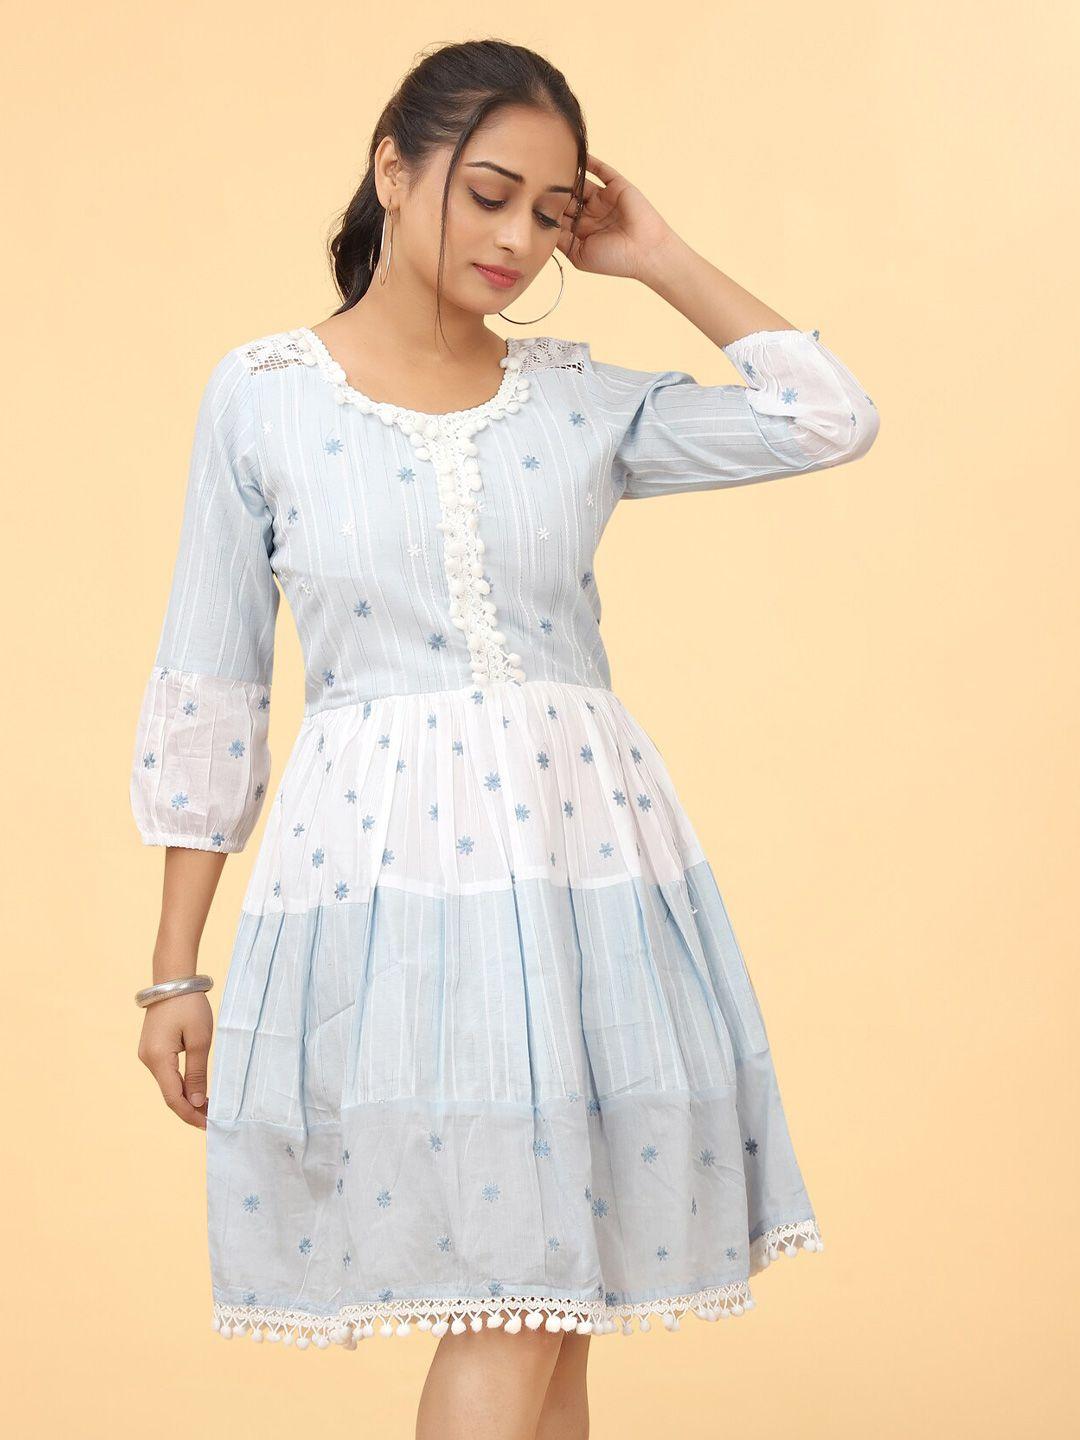 kesudi embroidered cotton dress